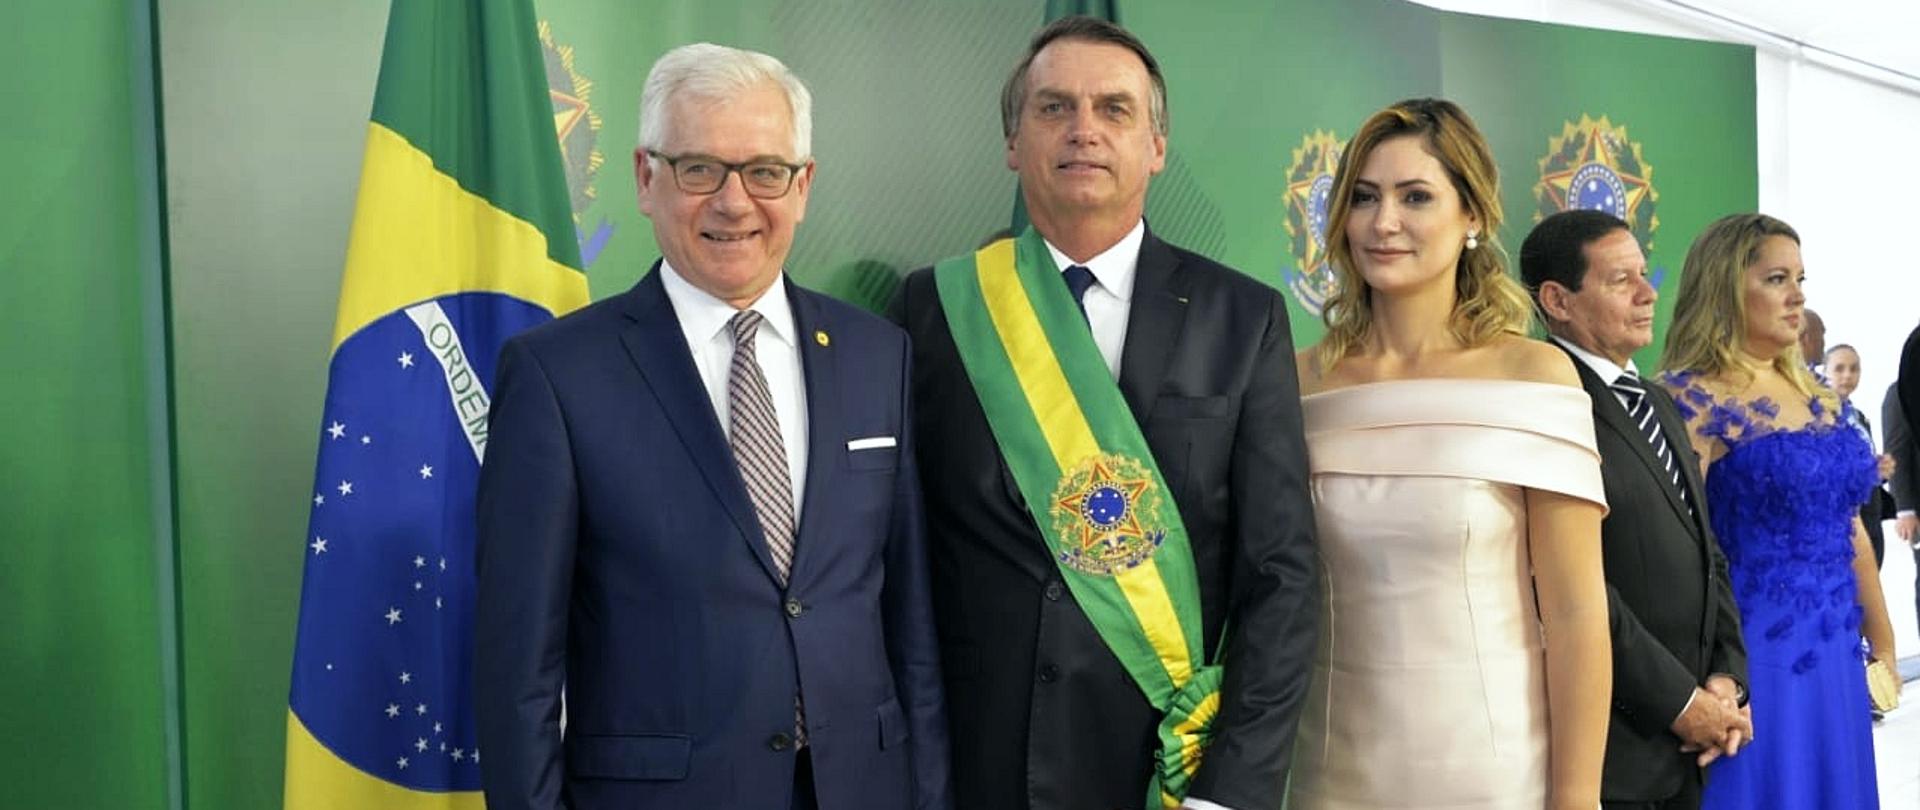 Zdjęcie przestawia ministra Jacka Czaputowicza podczas zaprzysiężeniem nowego prezydenta Brazylii.